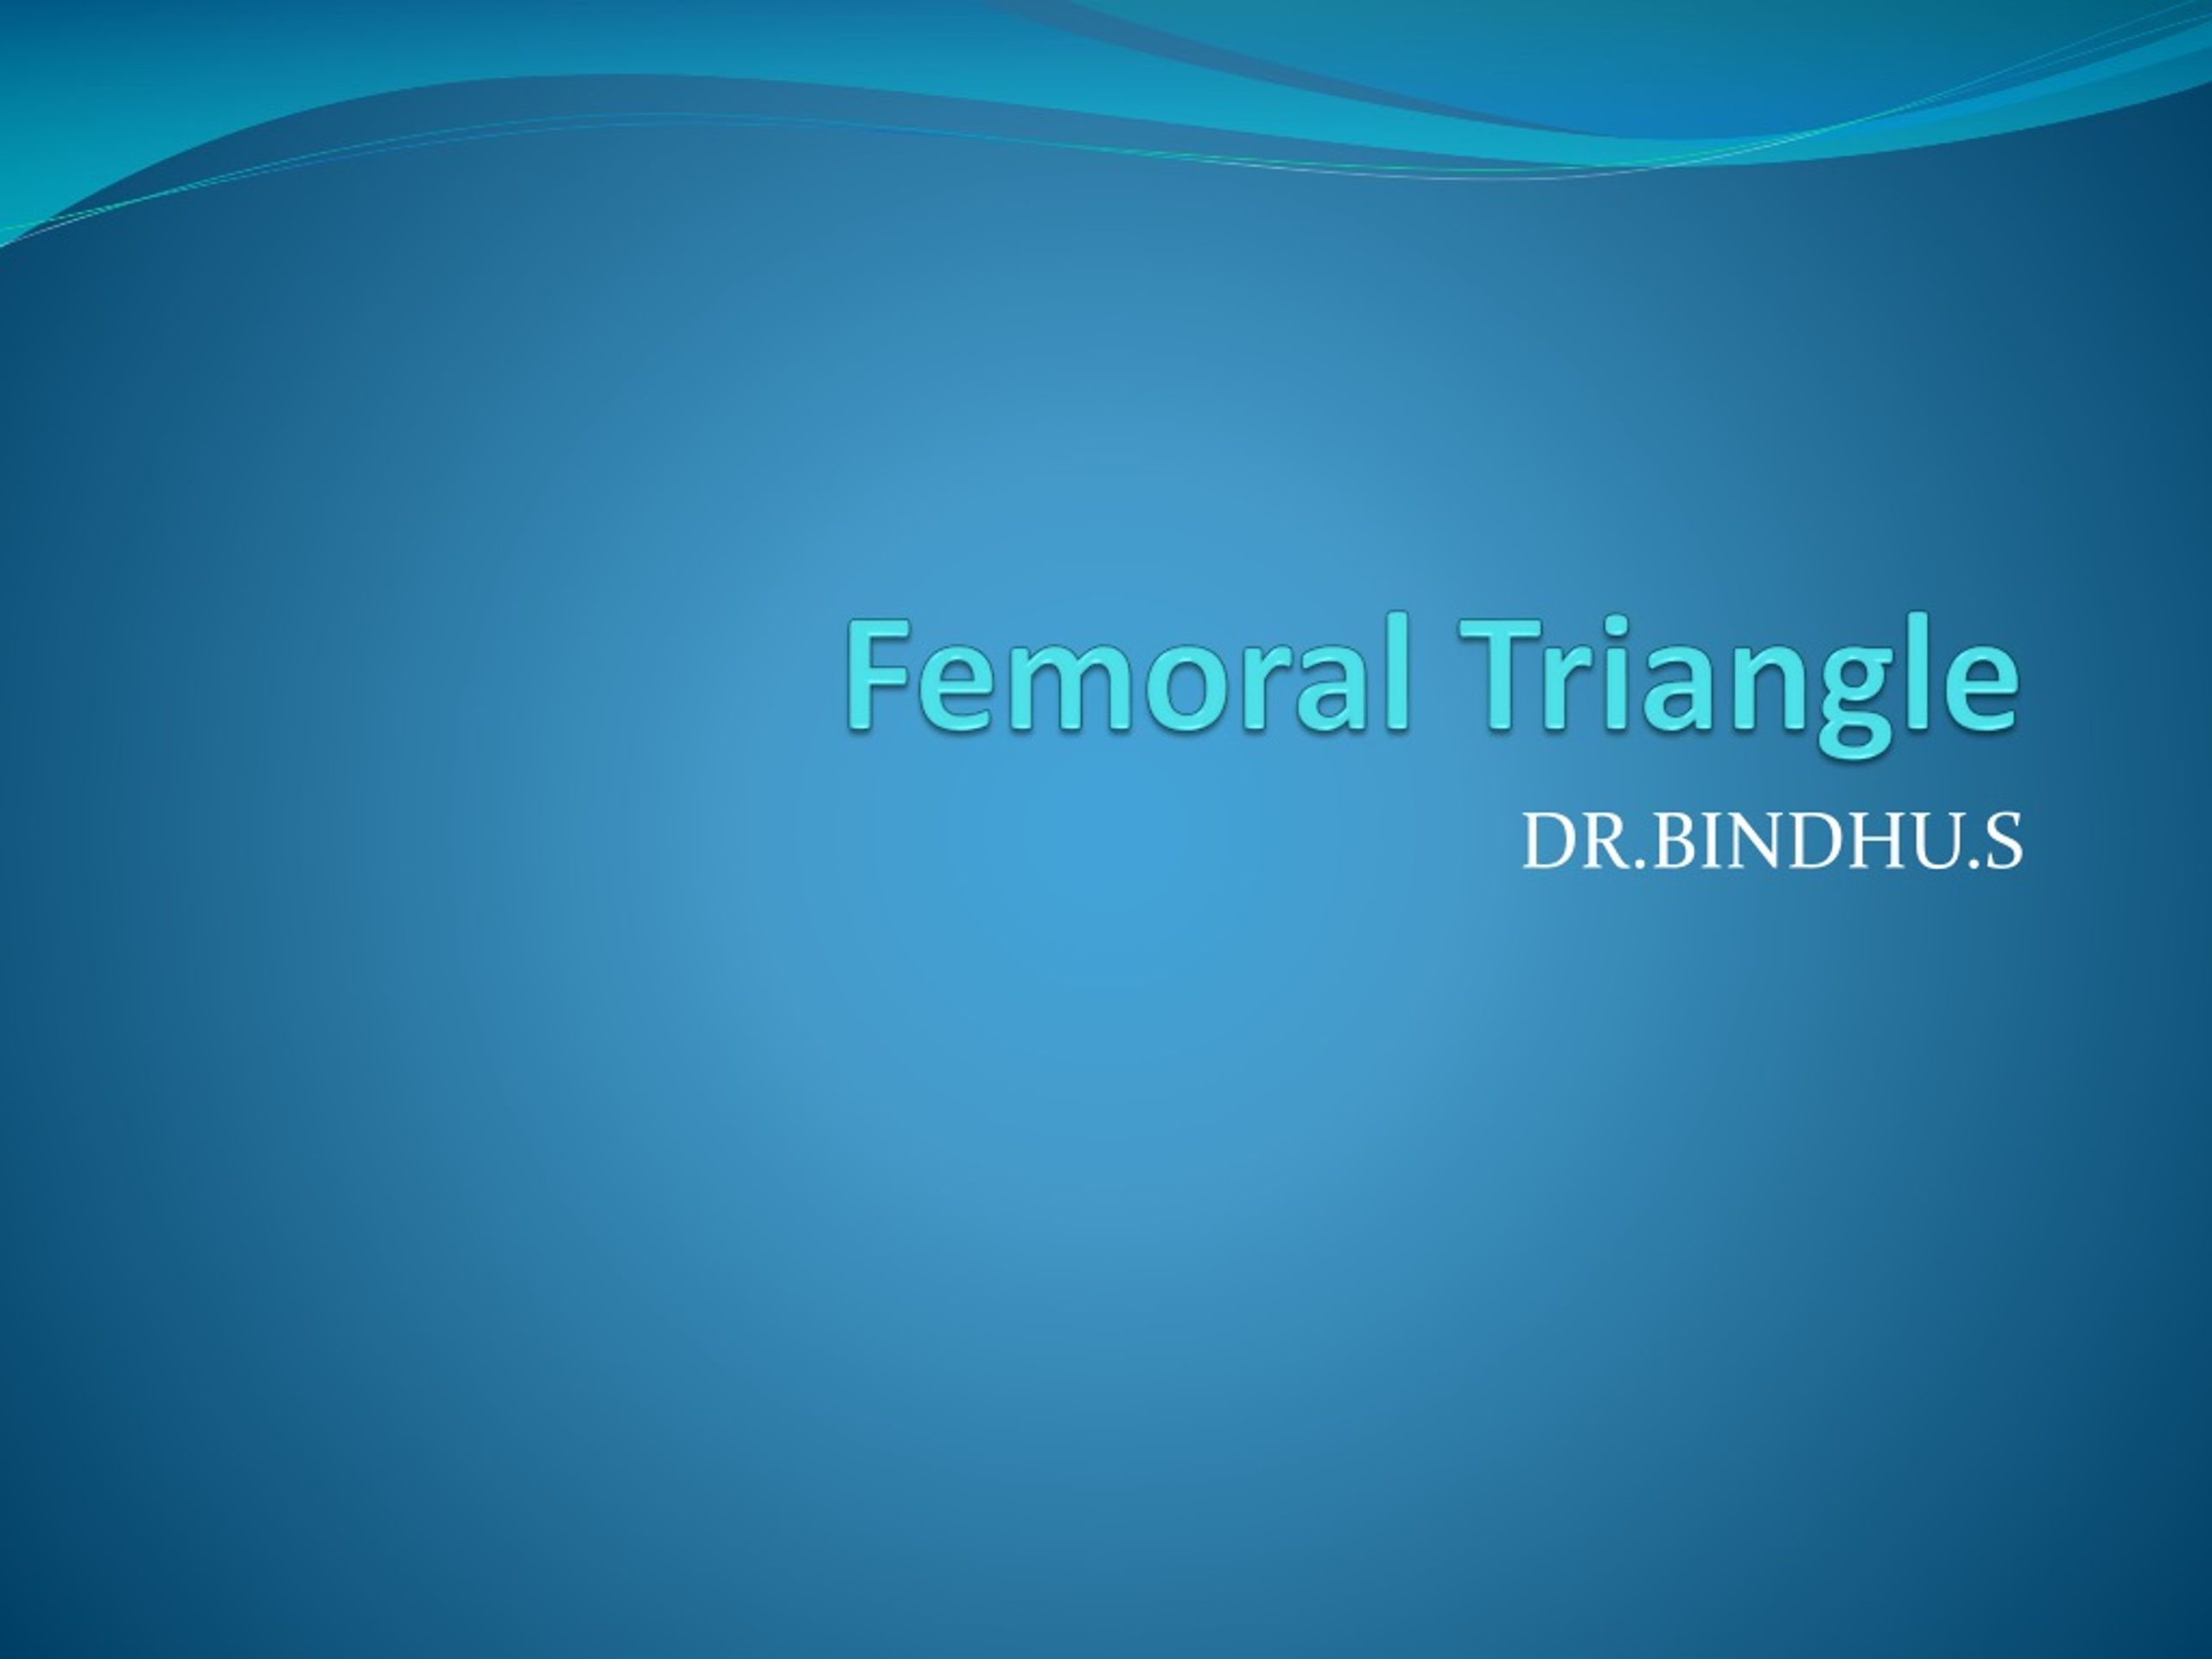 Femoral triangle - Wikipedia